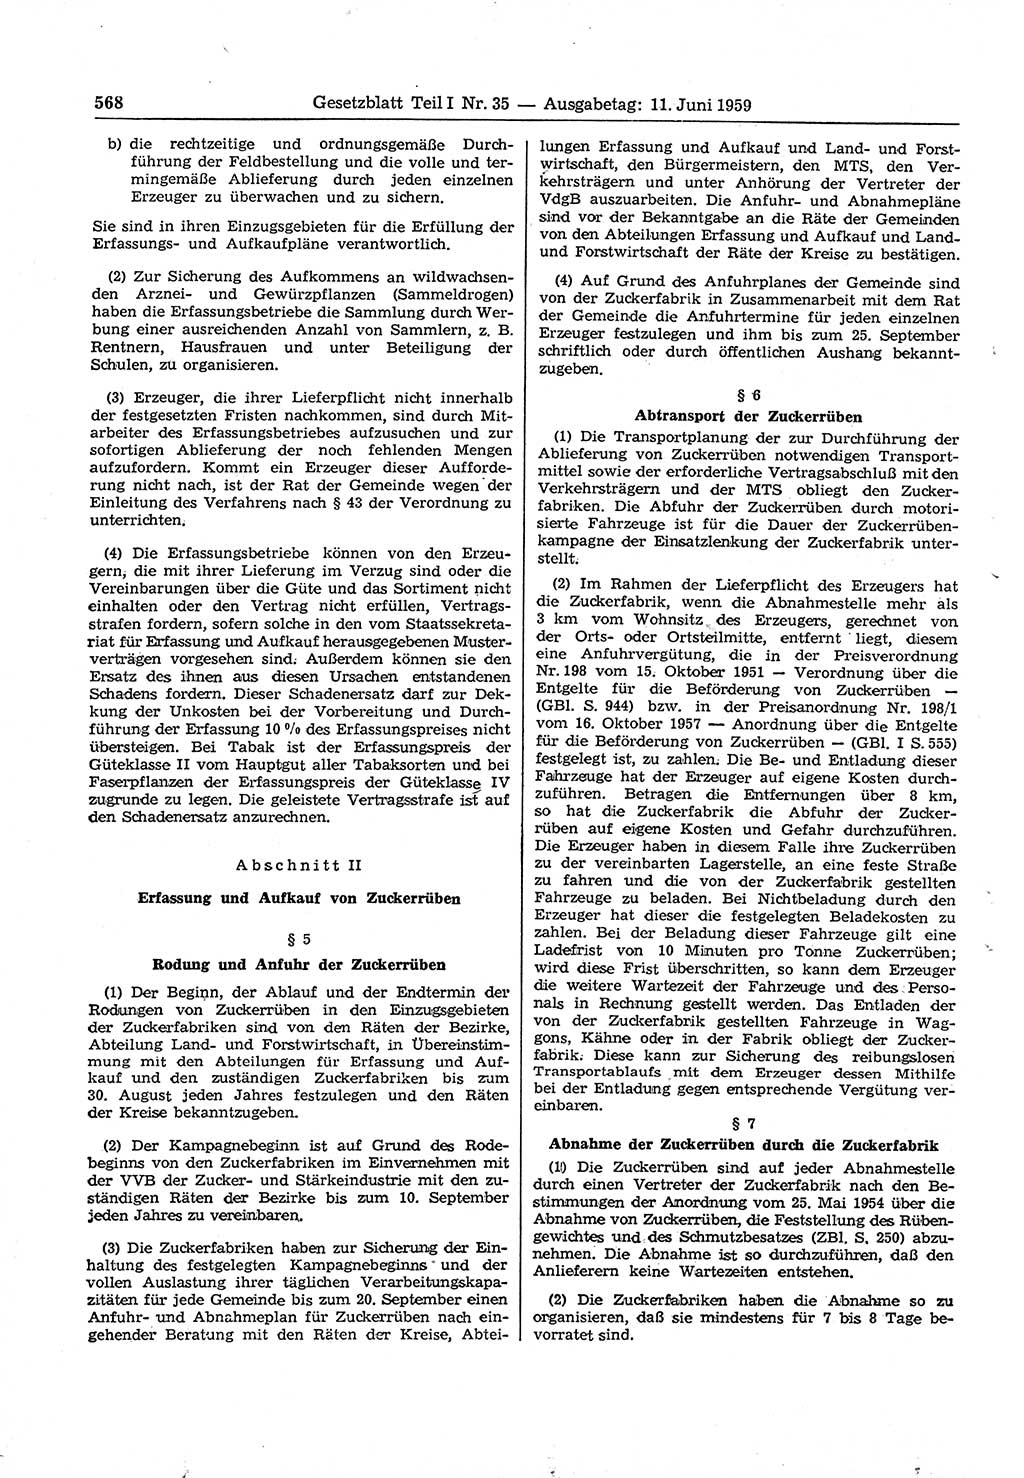 Gesetzblatt (GBl.) der Deutschen Demokratischen Republik (DDR) Teil Ⅰ 1959, Seite 568 (GBl. DDR Ⅰ 1959, S. 568)